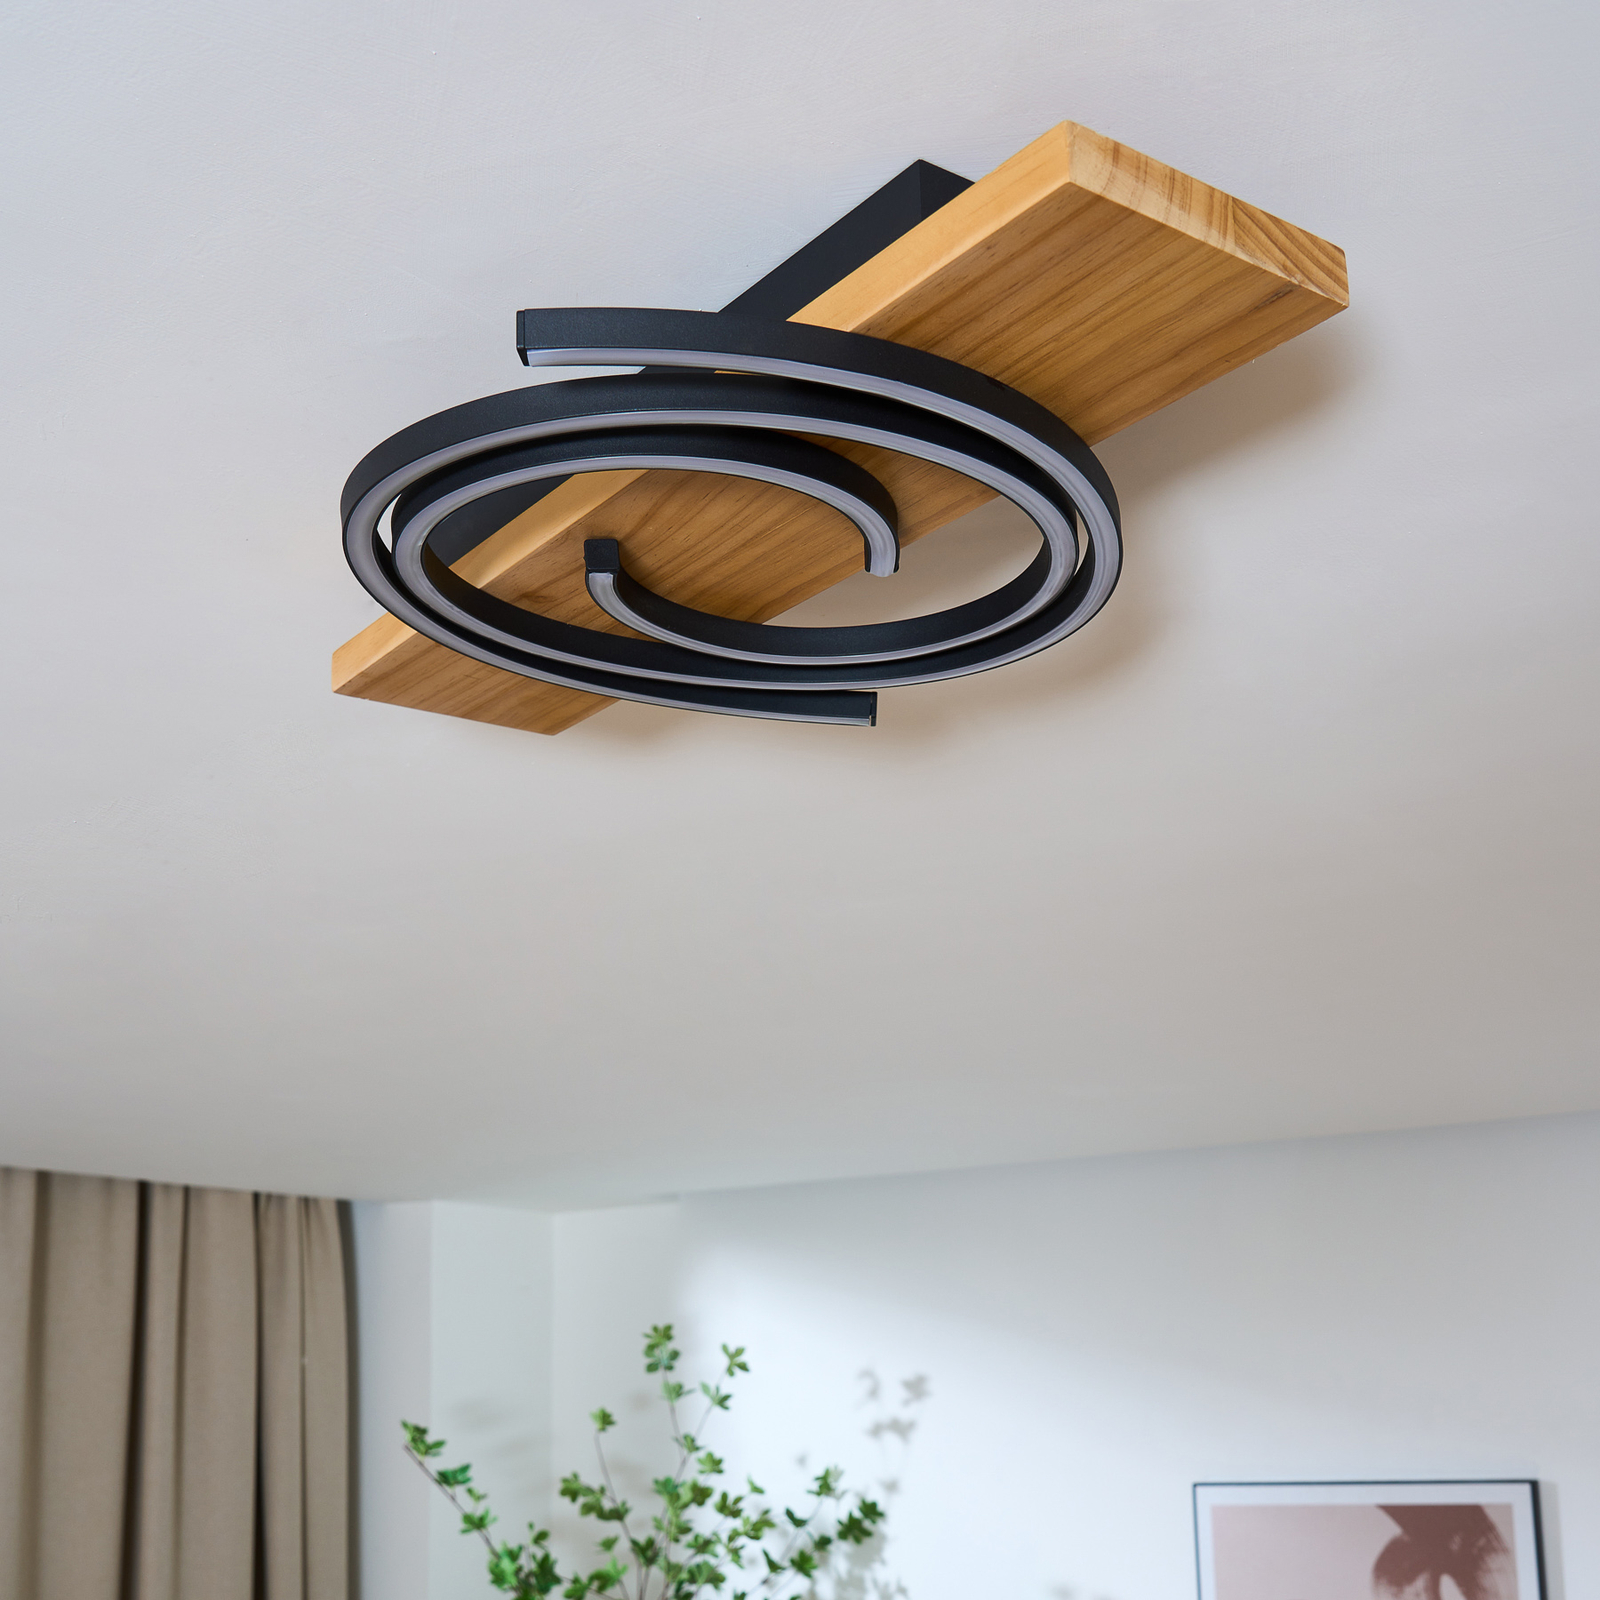 Plafonnier LED Rifia, brun, longueur 50 cm, bois